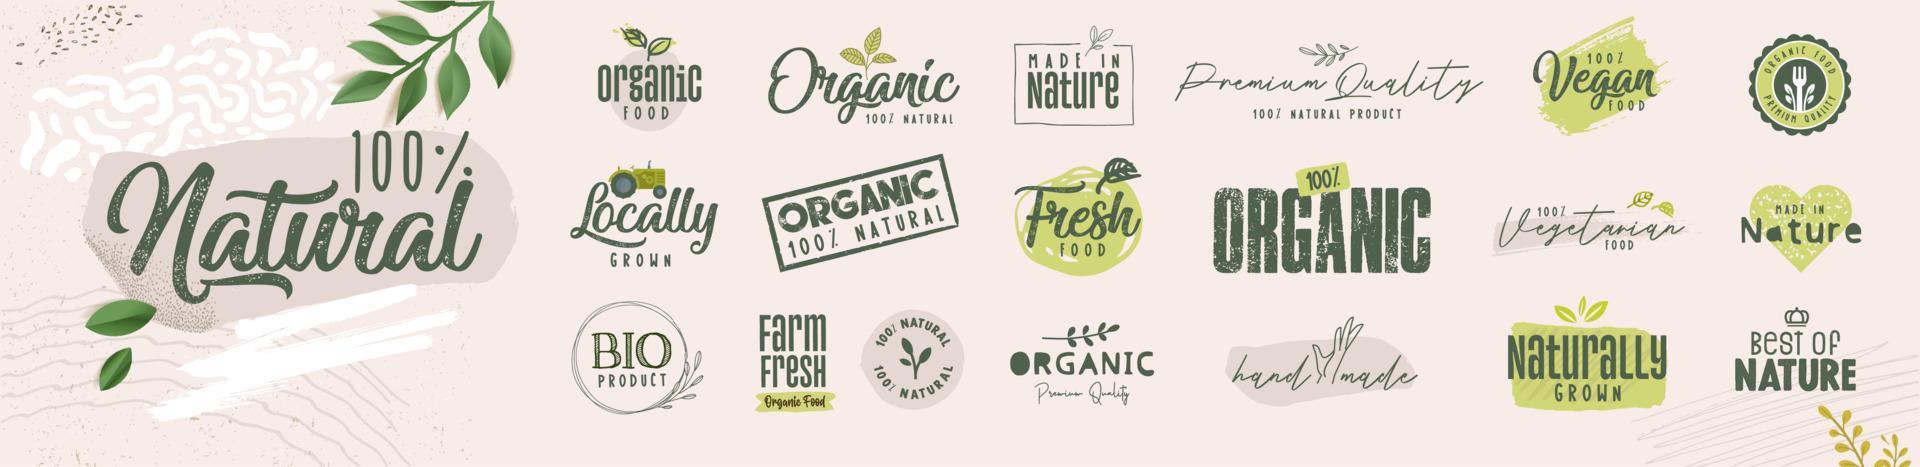 ekologiska element av högsta kvalitet för livsmedelsmarknaden, e-handel, marknadsföring av ekologiska produkter, restaurang, hälsosamt liv. vektor illustration koncept för webbdesign, förpackningsdesign, marknadsföring.